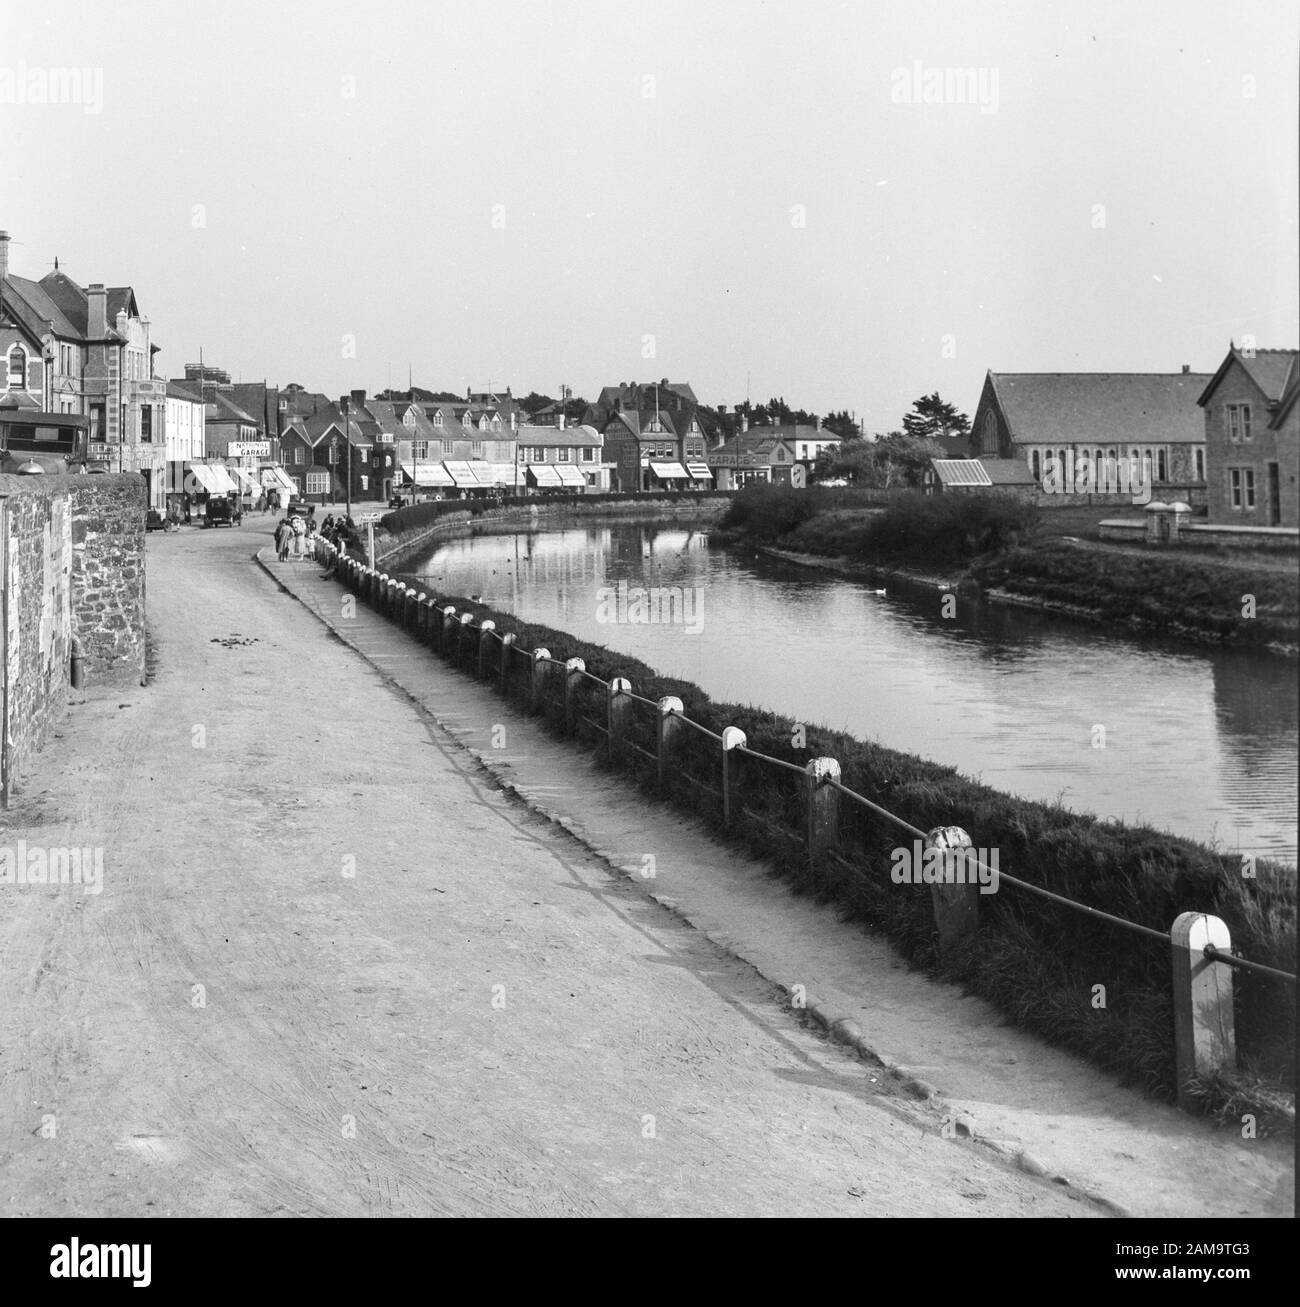 Image d'archive vers 1920 de Bude, Cornwall, montrant Summerleaze Crescent, River Strat ou Next. Numérisé à partir du négatif d'origine. Banque D'Images